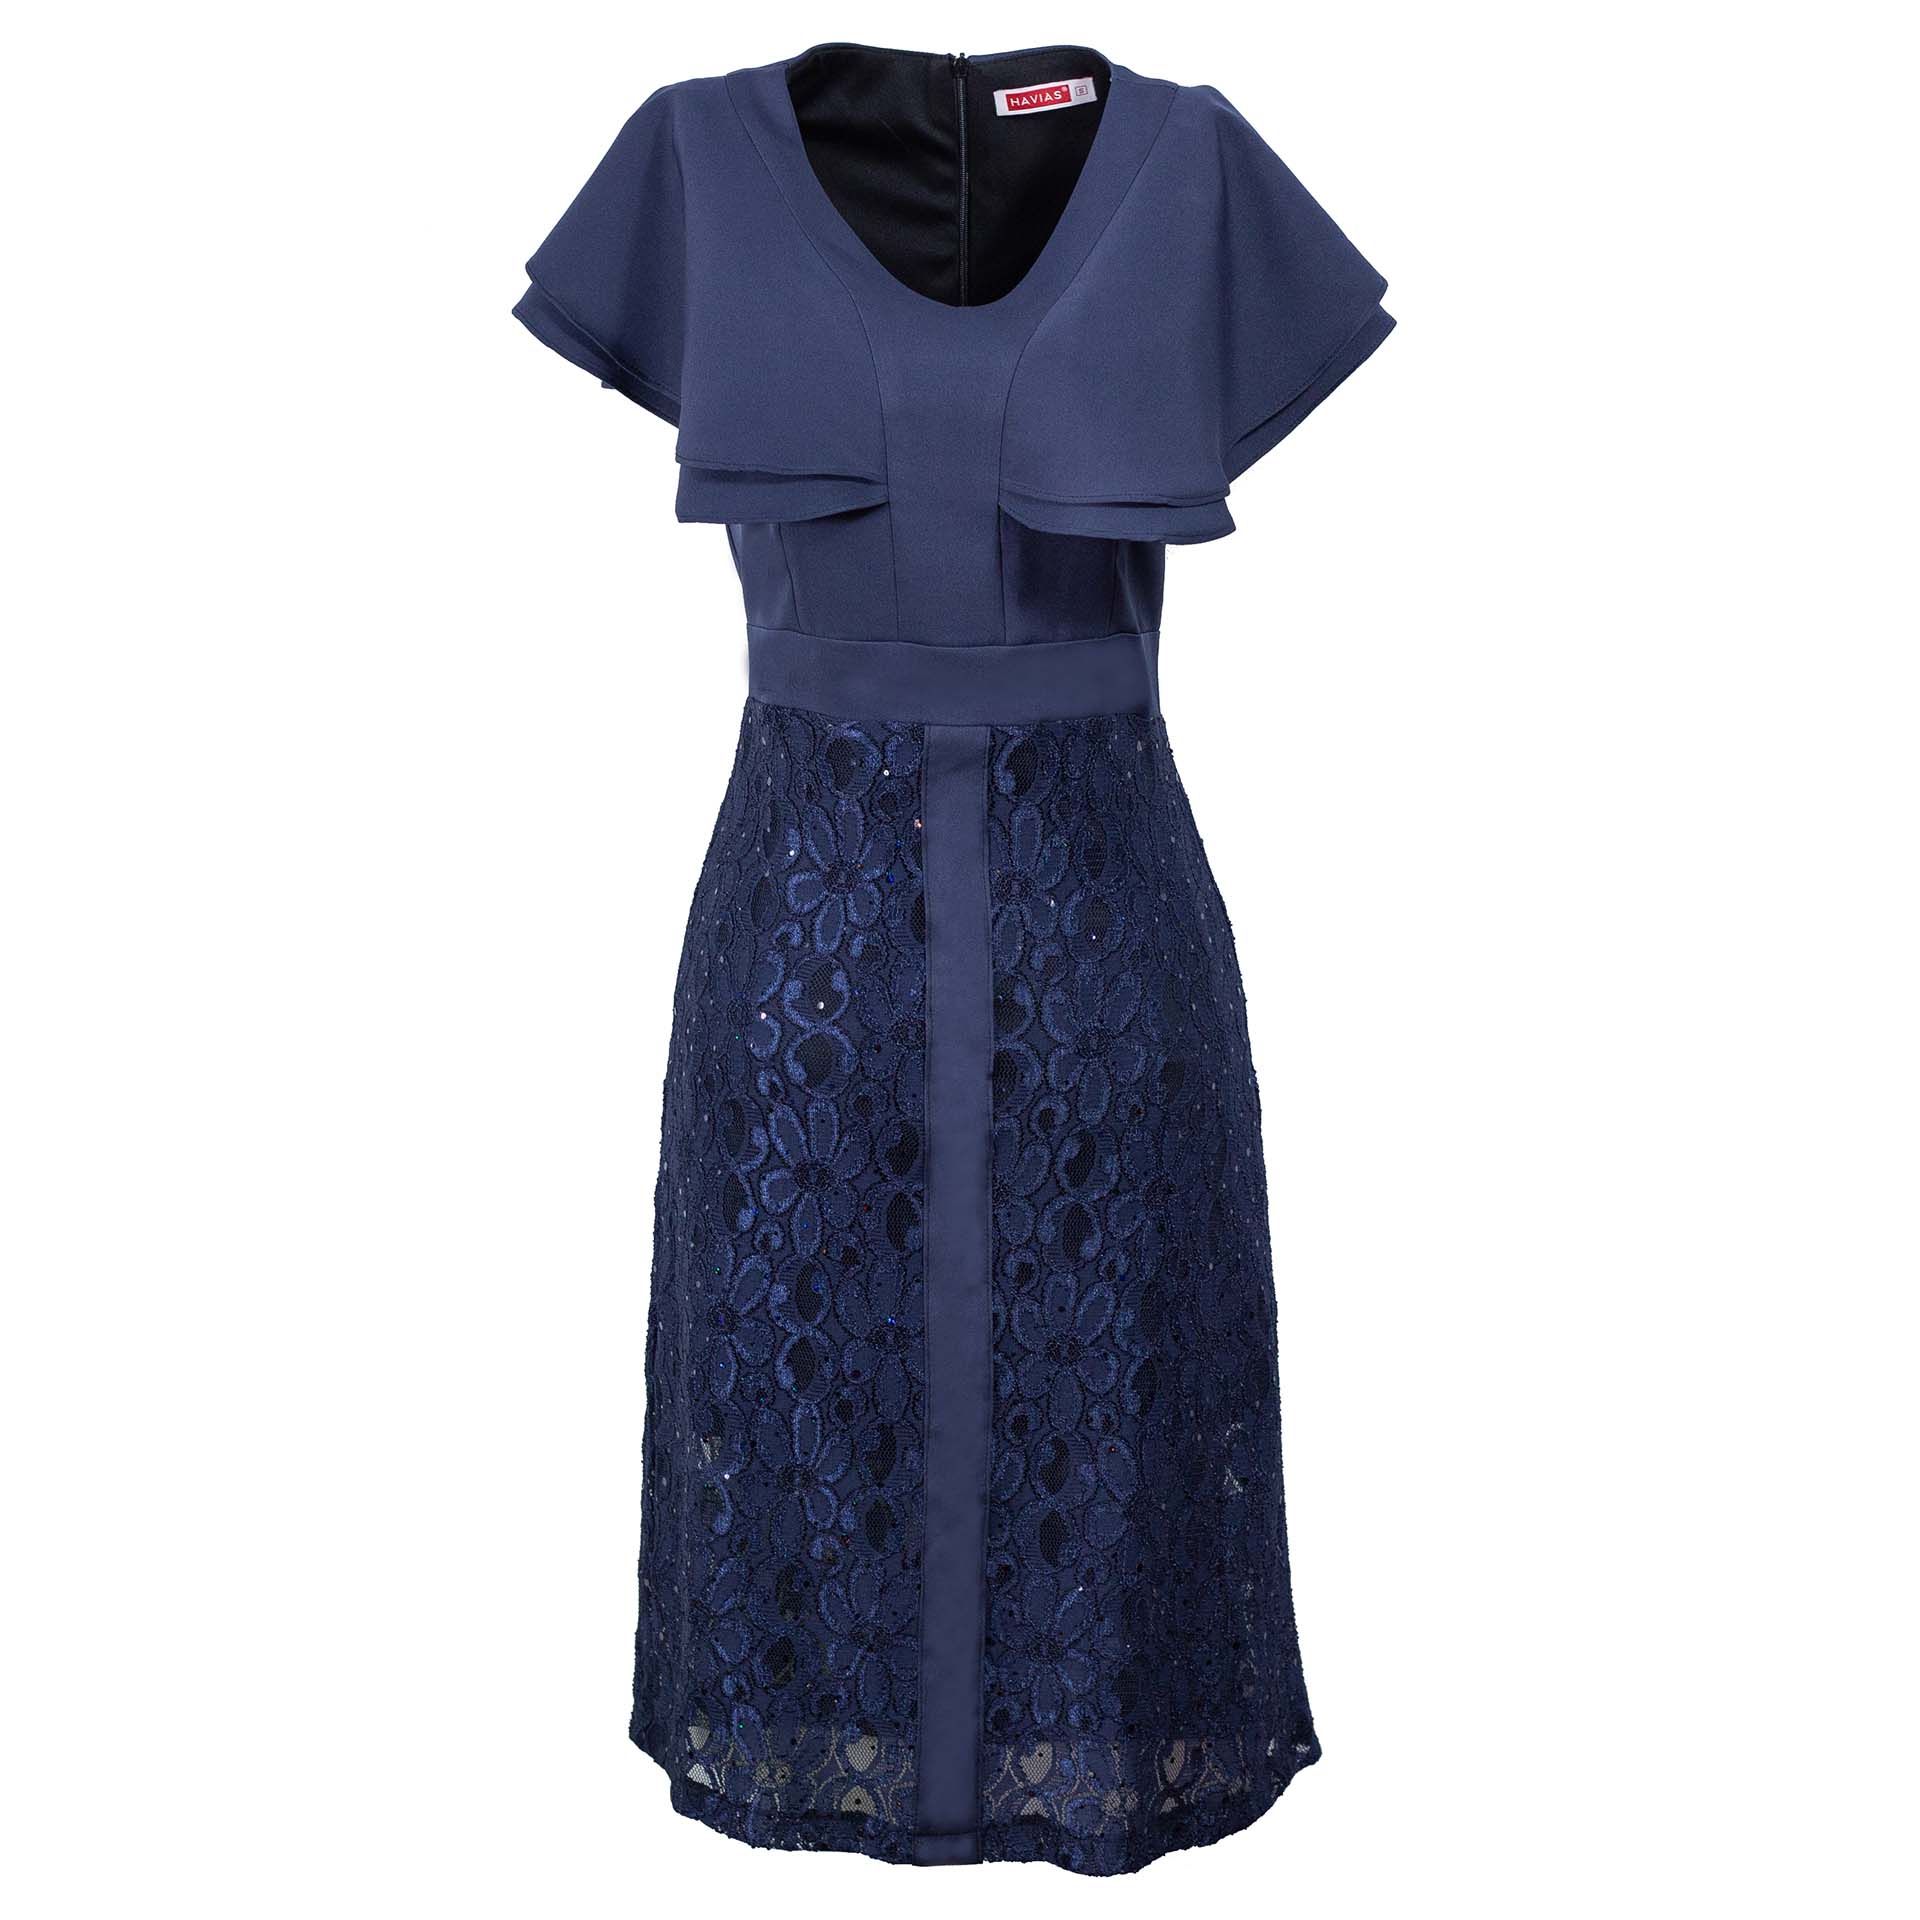 Đầm Classy Wing Sleeve Twinkle Lace Navy Dress